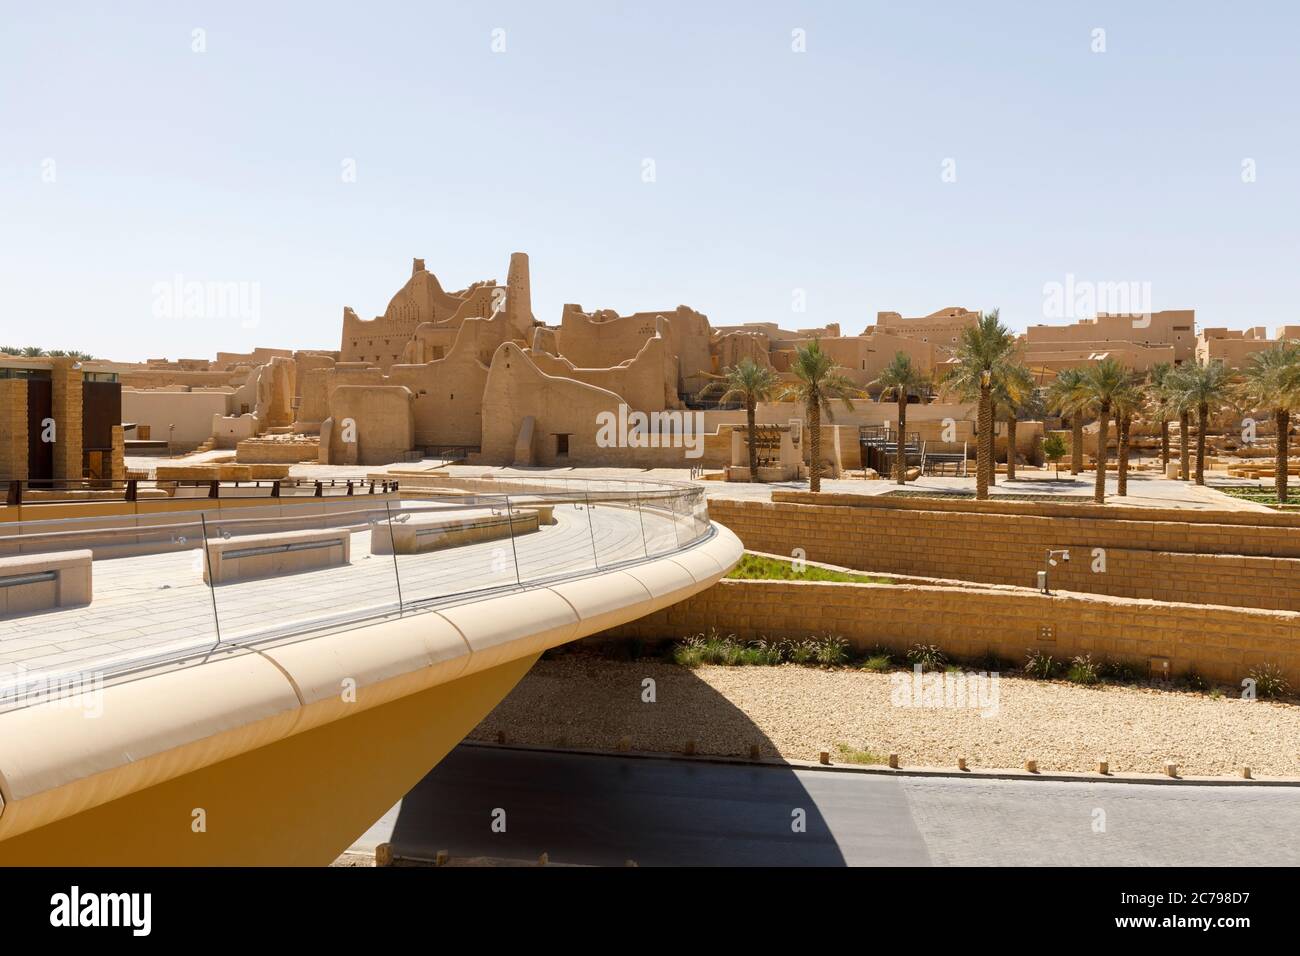 Riad, Arabie Saoudite, février 14 2020 : passerelle piétonne vers le quartier historique Al-Diraiyah de Riyad en Arabie Saoudite Banque D'Images